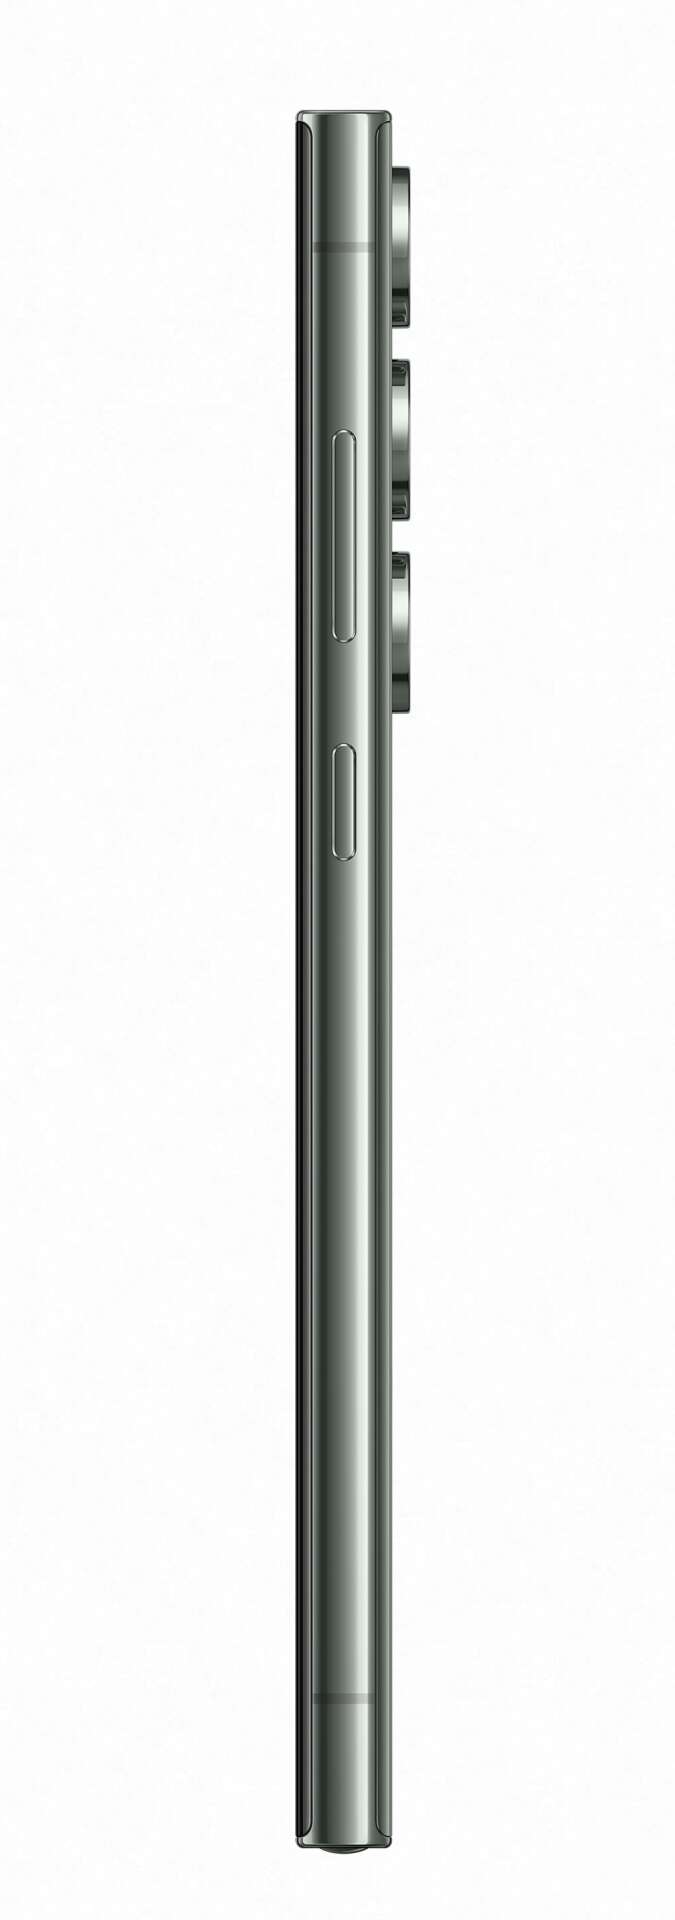 Samsung galaxy s23 ultra 5g 512gb 12gb ram dual sim mobiltelefon, zöld